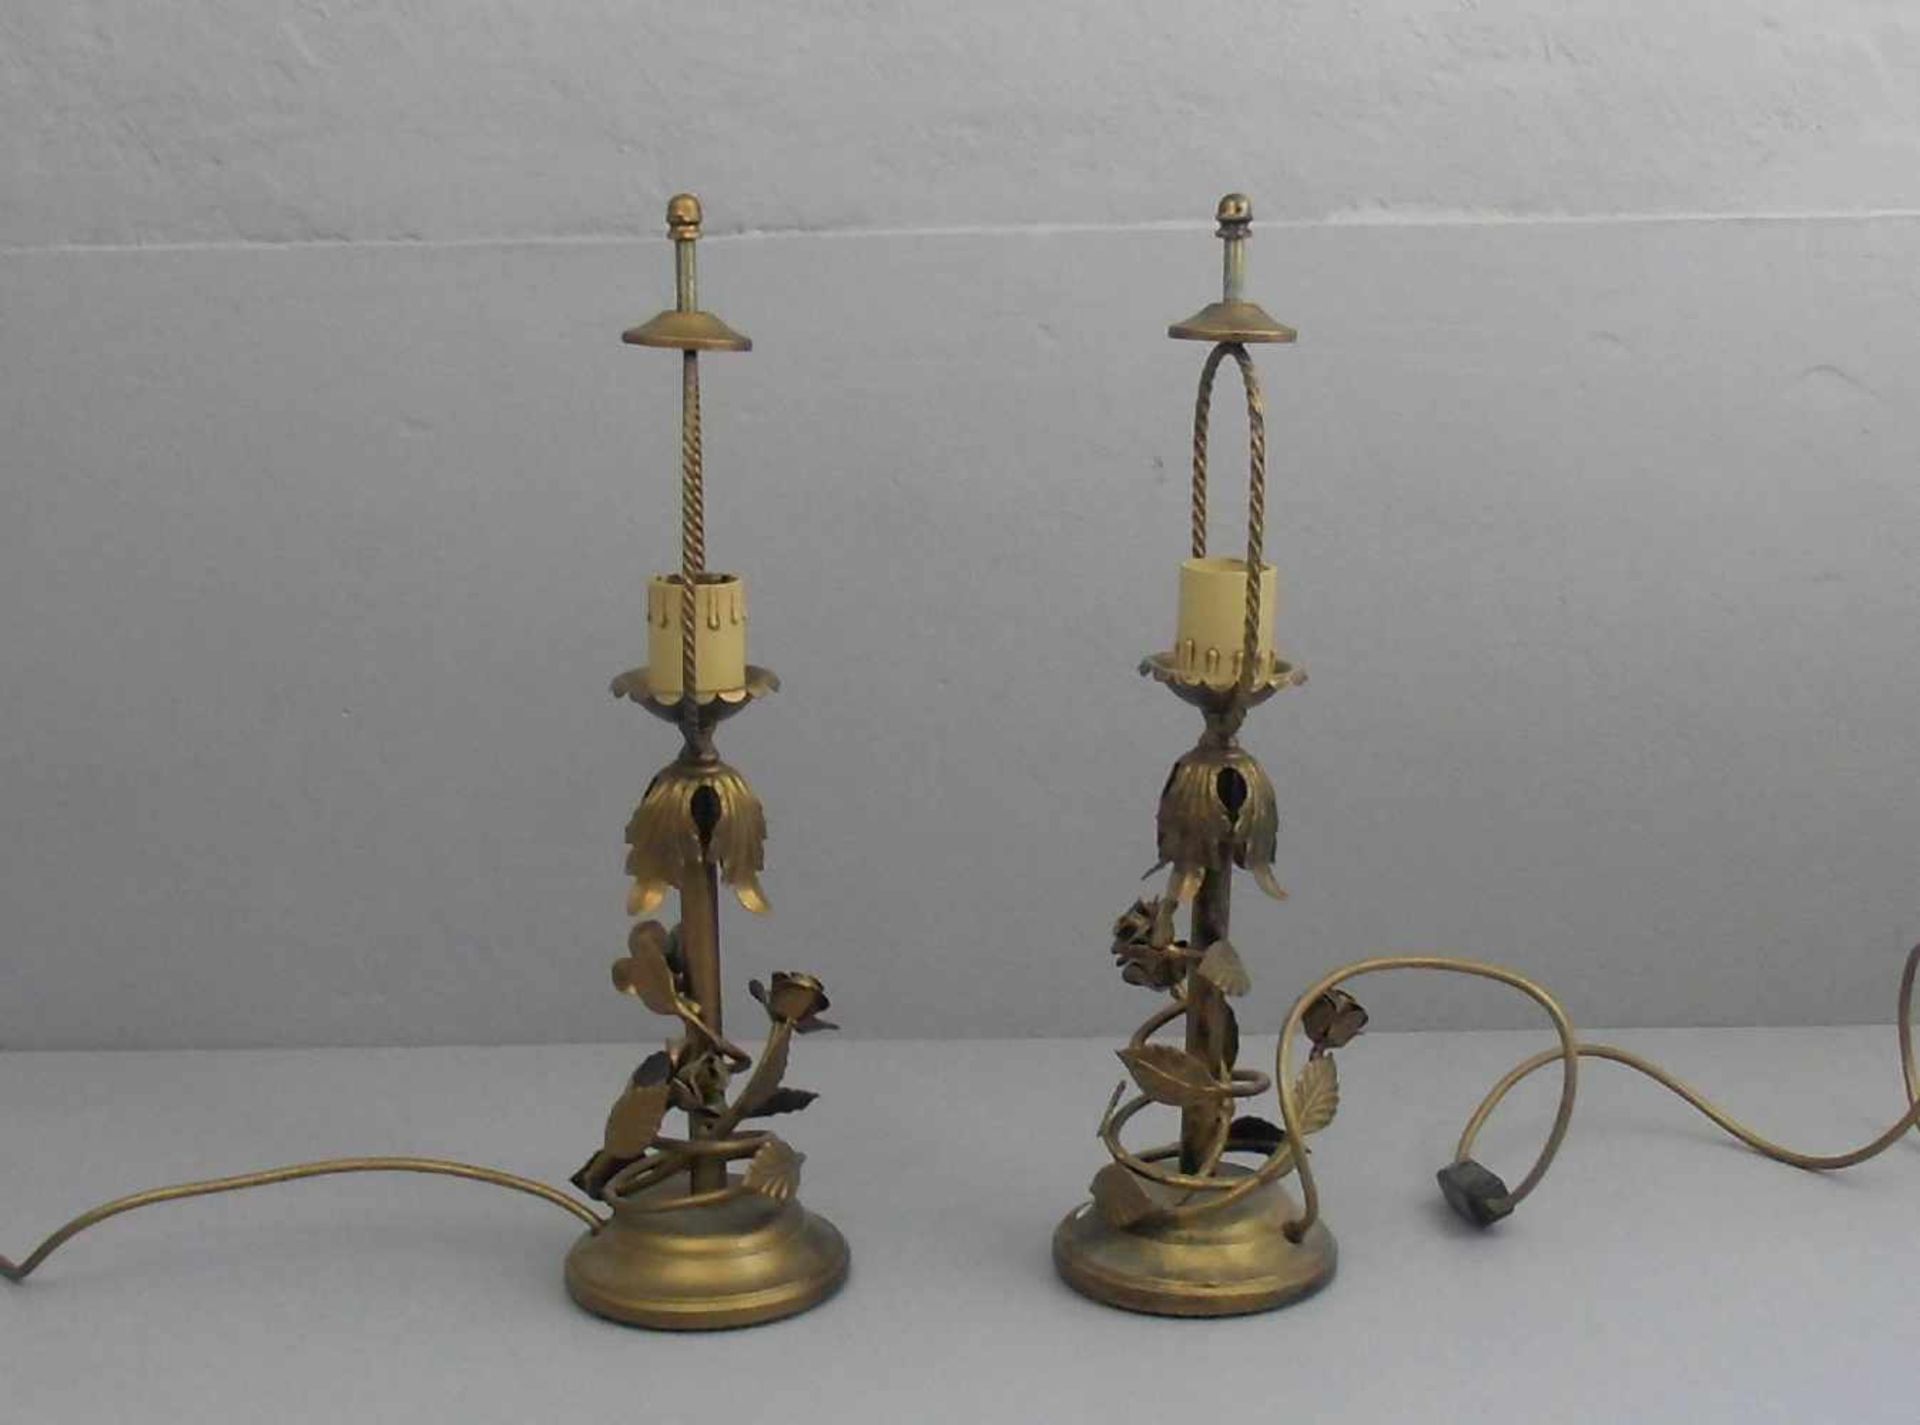 PAAR LAMPEN / TISCHLAMPEN, bronziertes Metall, einflammig elektrifiziert. Profilierter Rundstand, - Image 2 of 2